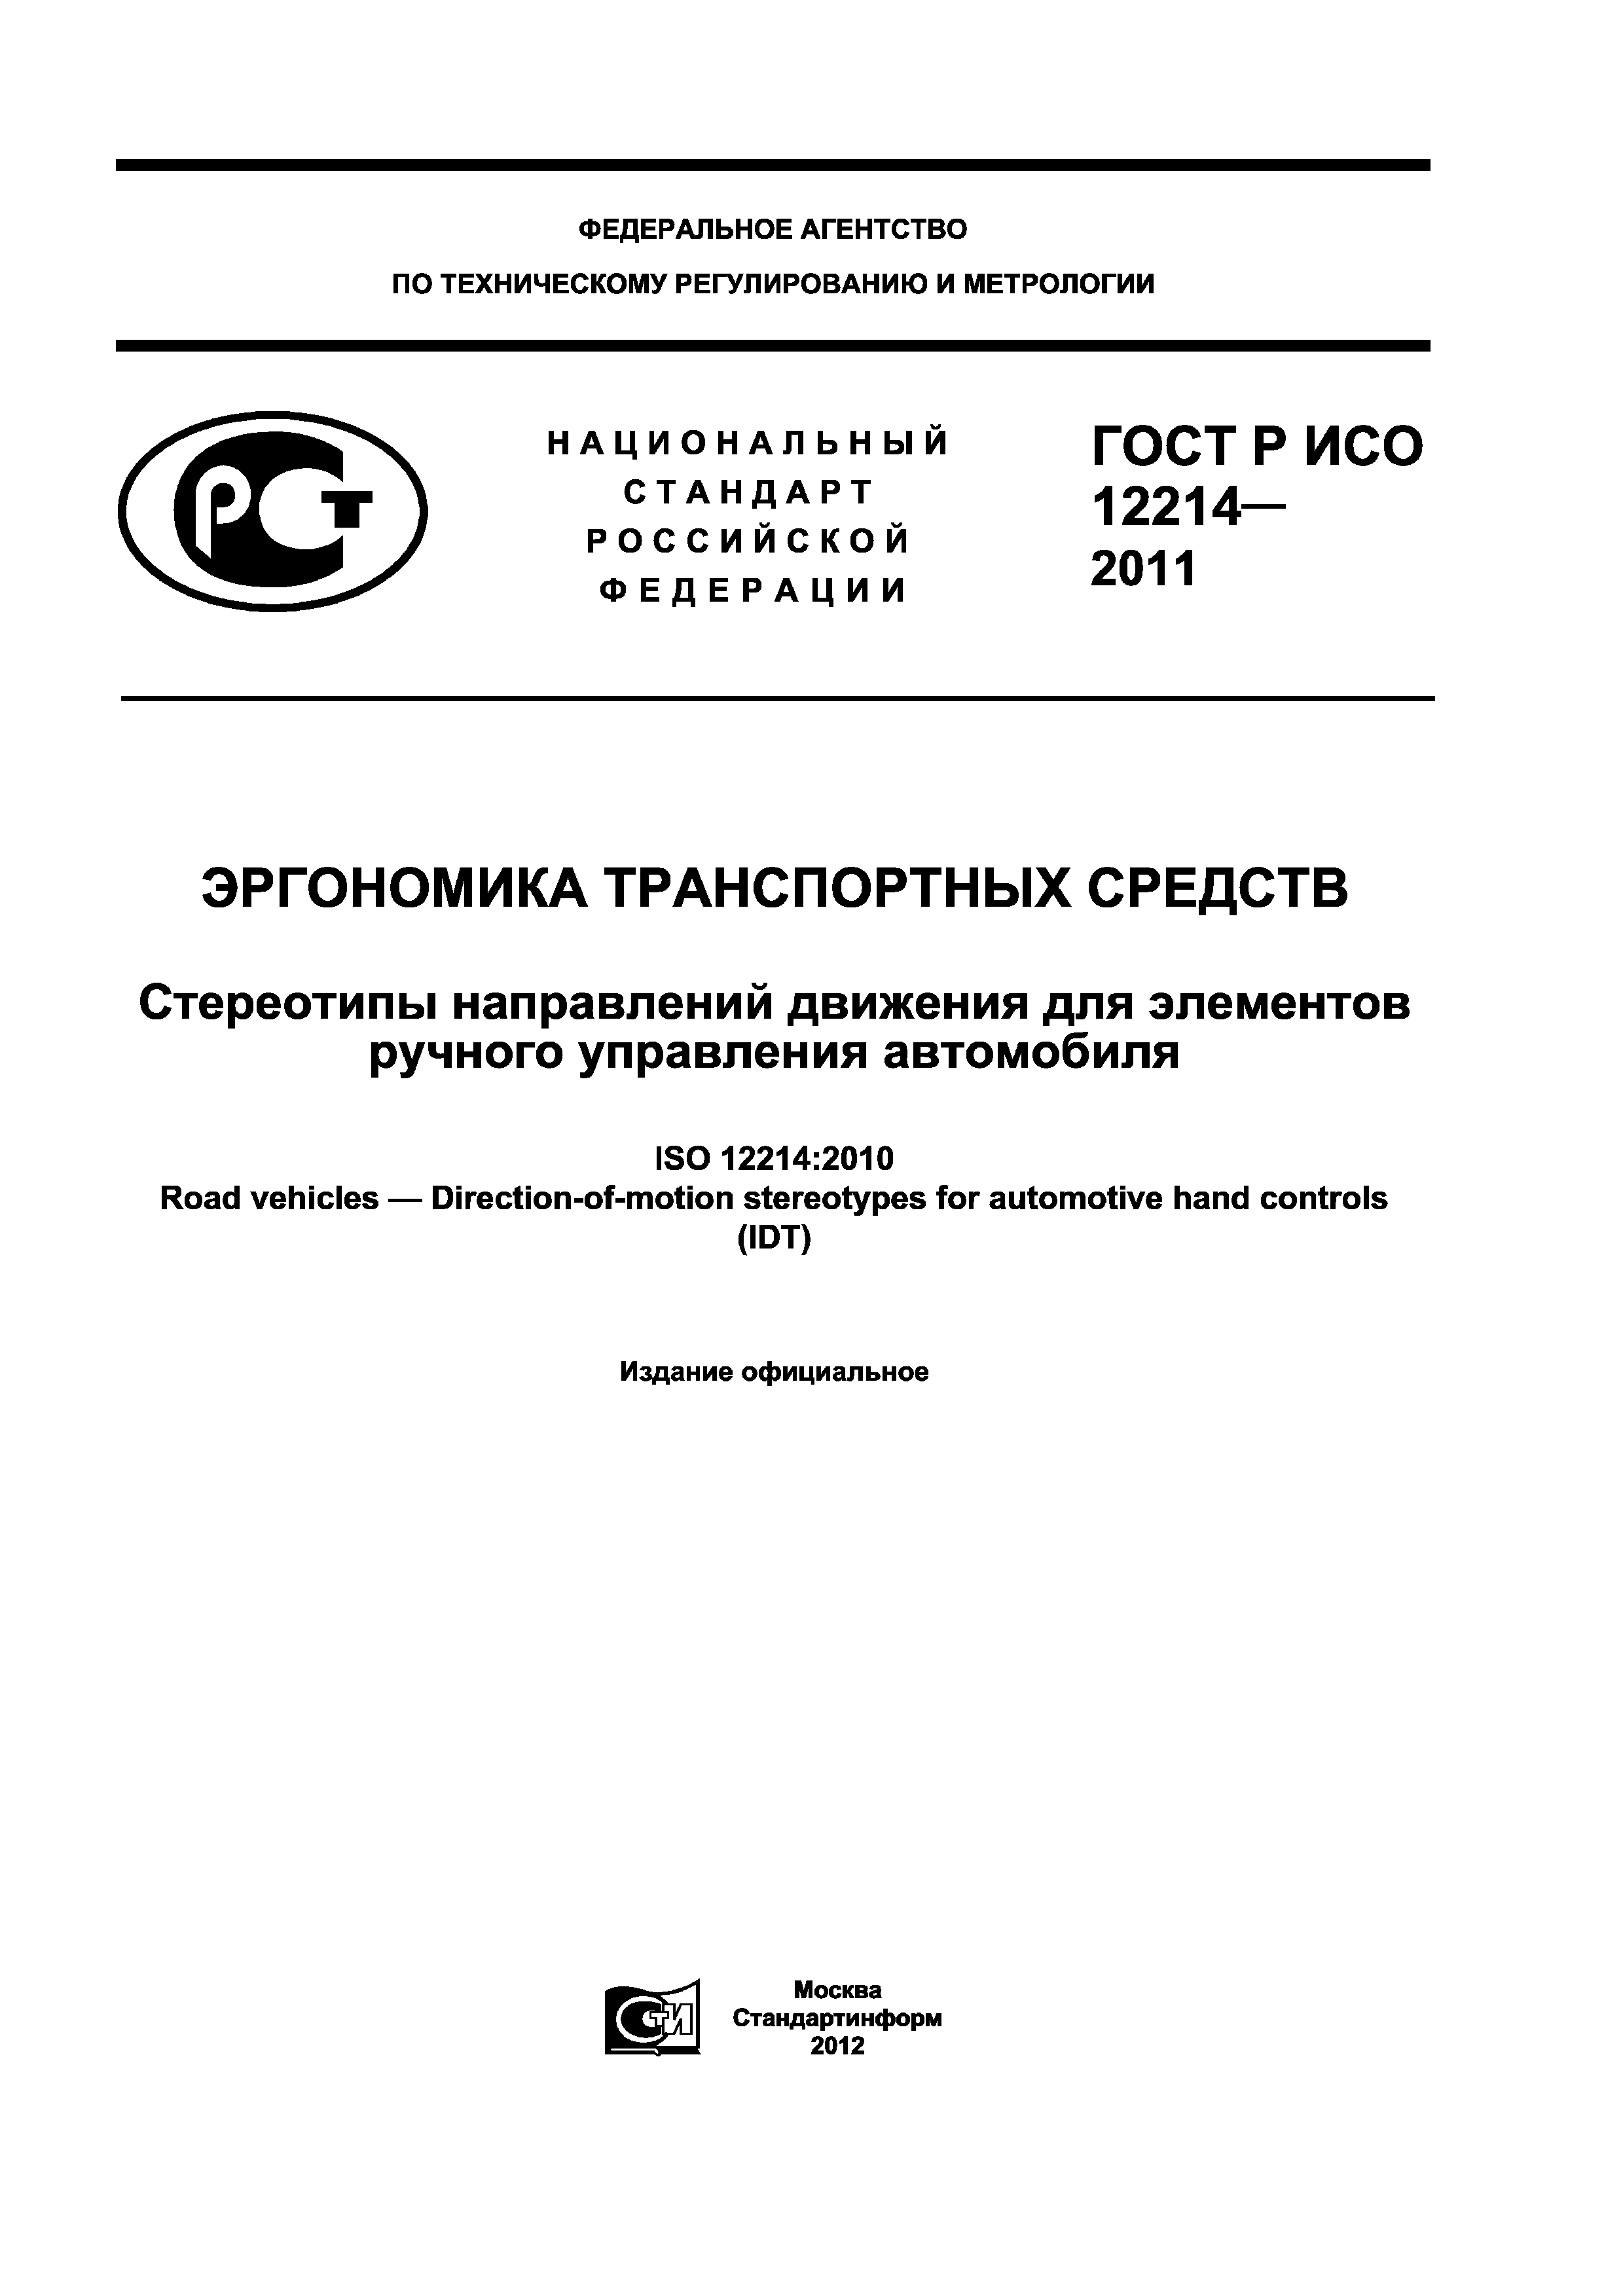 ГОСТ Р ИСО 12214-2011